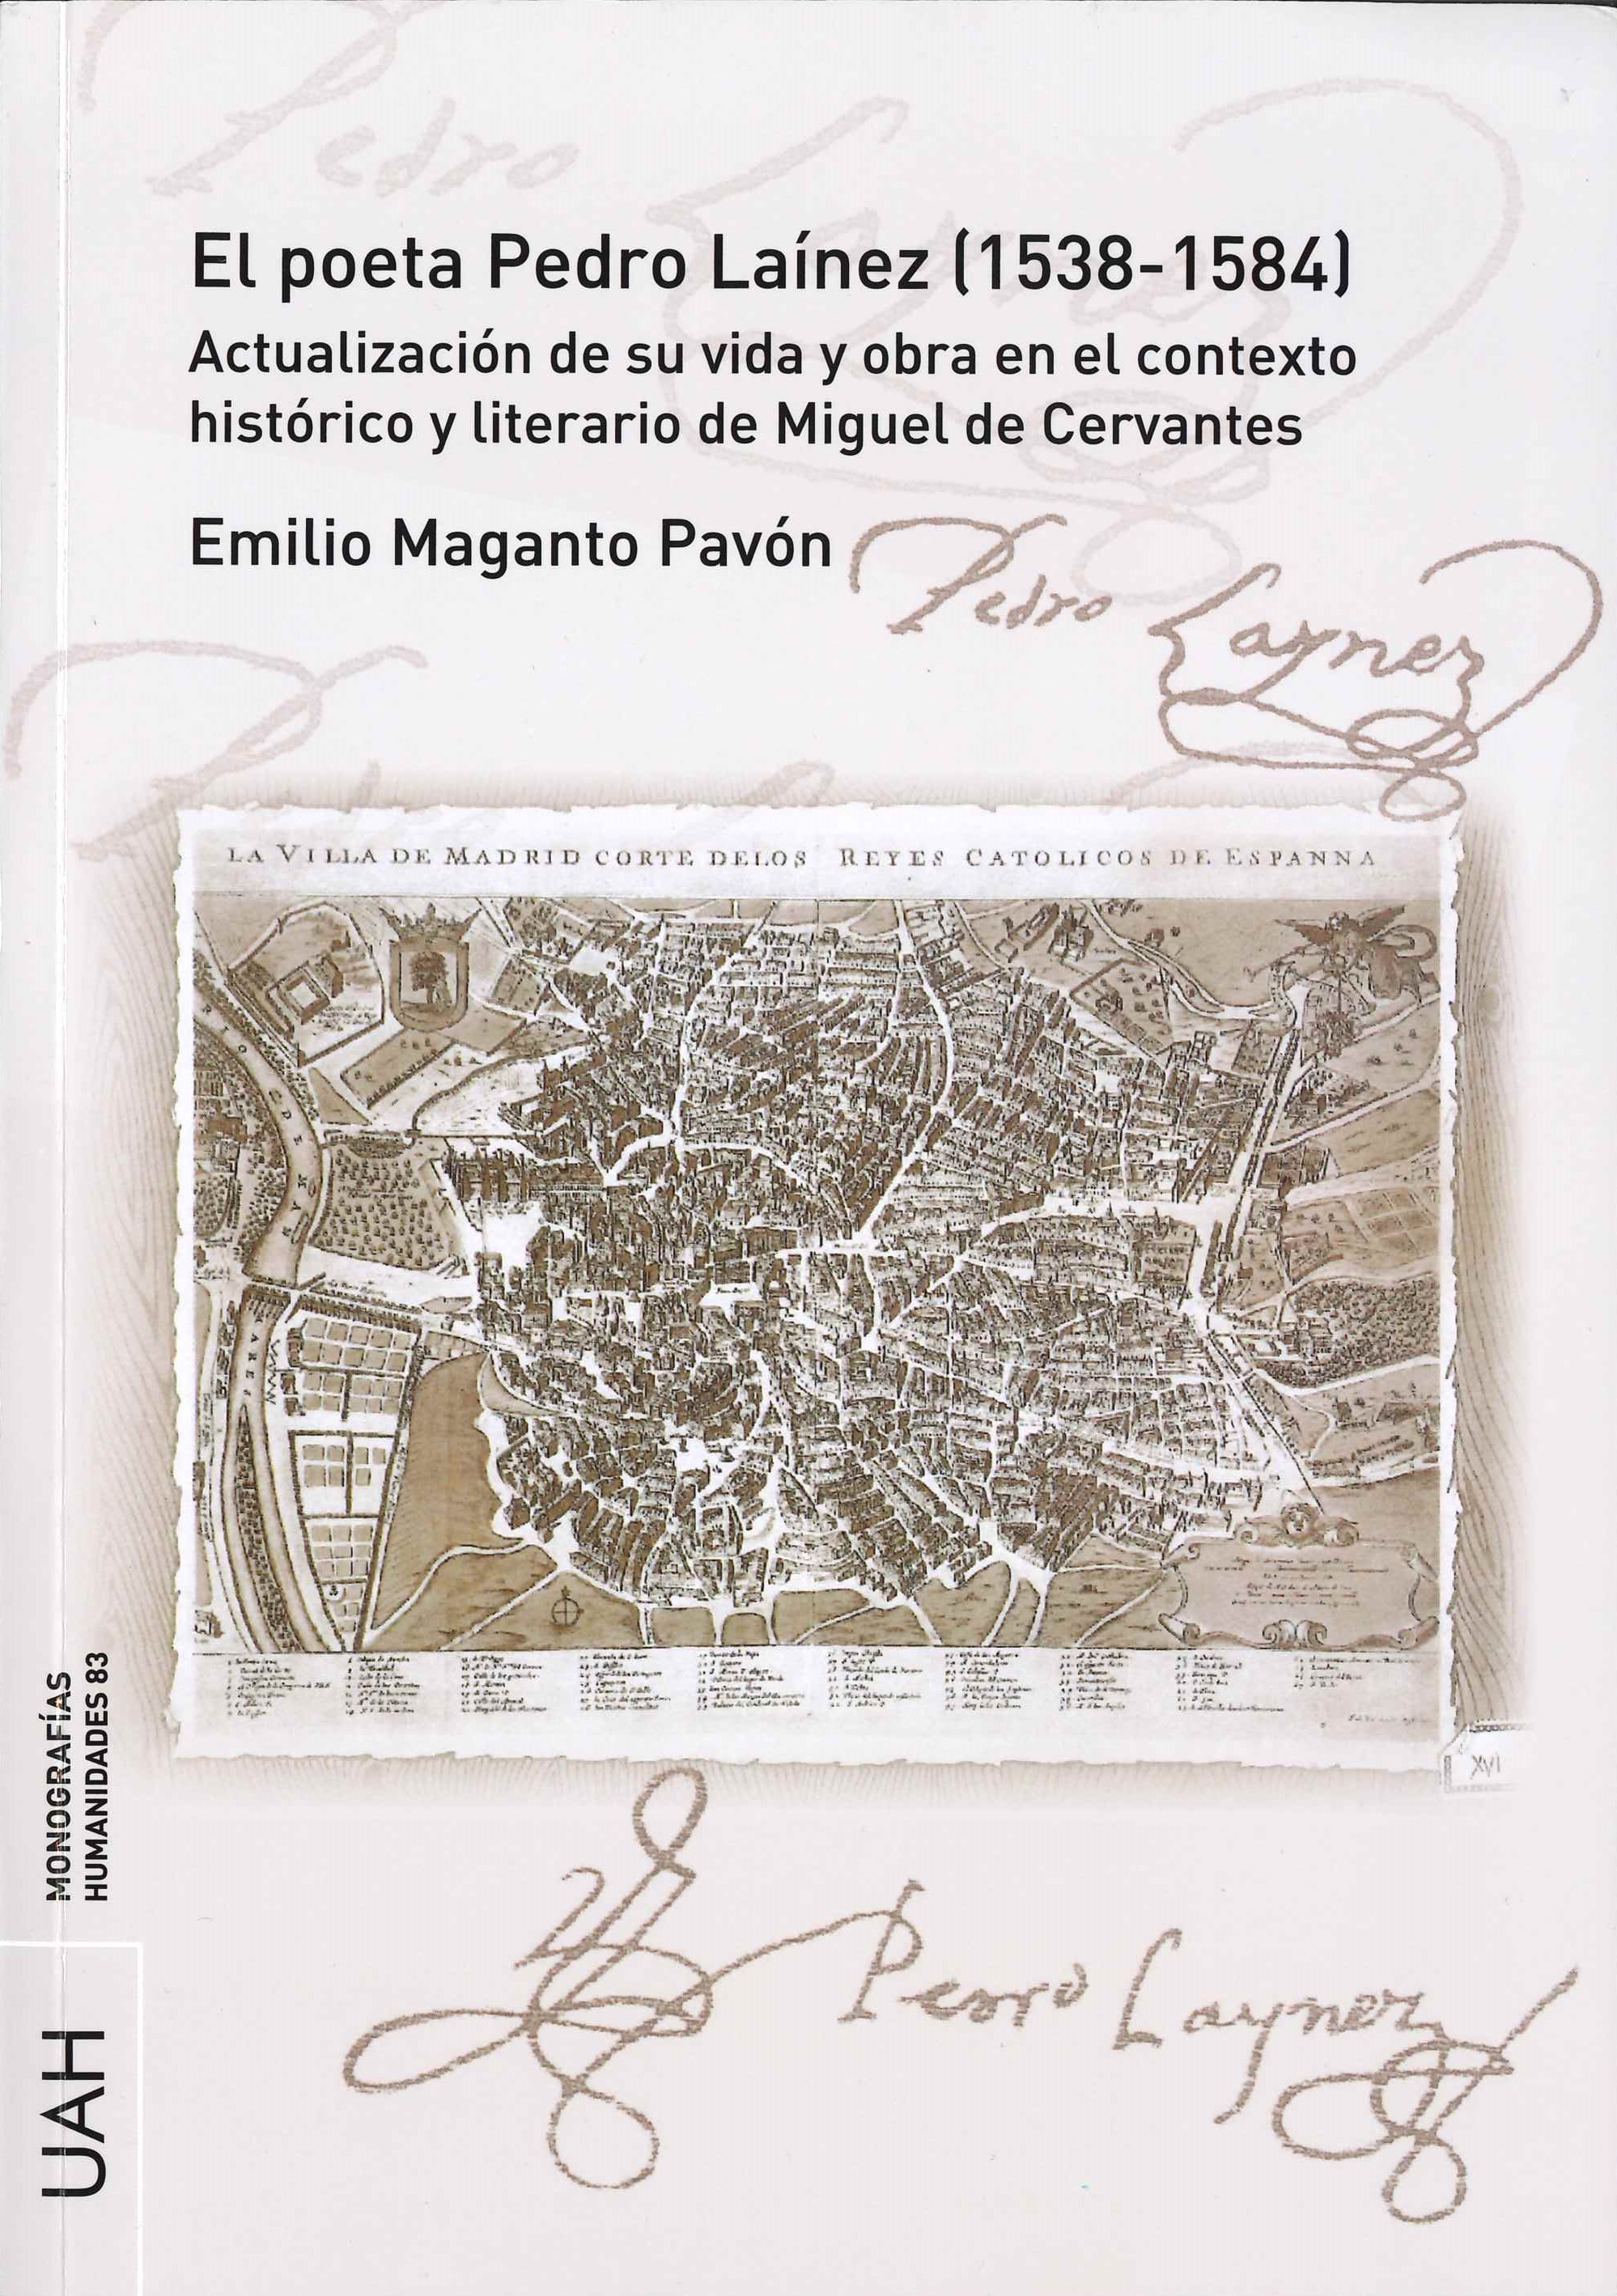 Imagen de portada del libro El poeta Pedro Laínez (1538-1584)